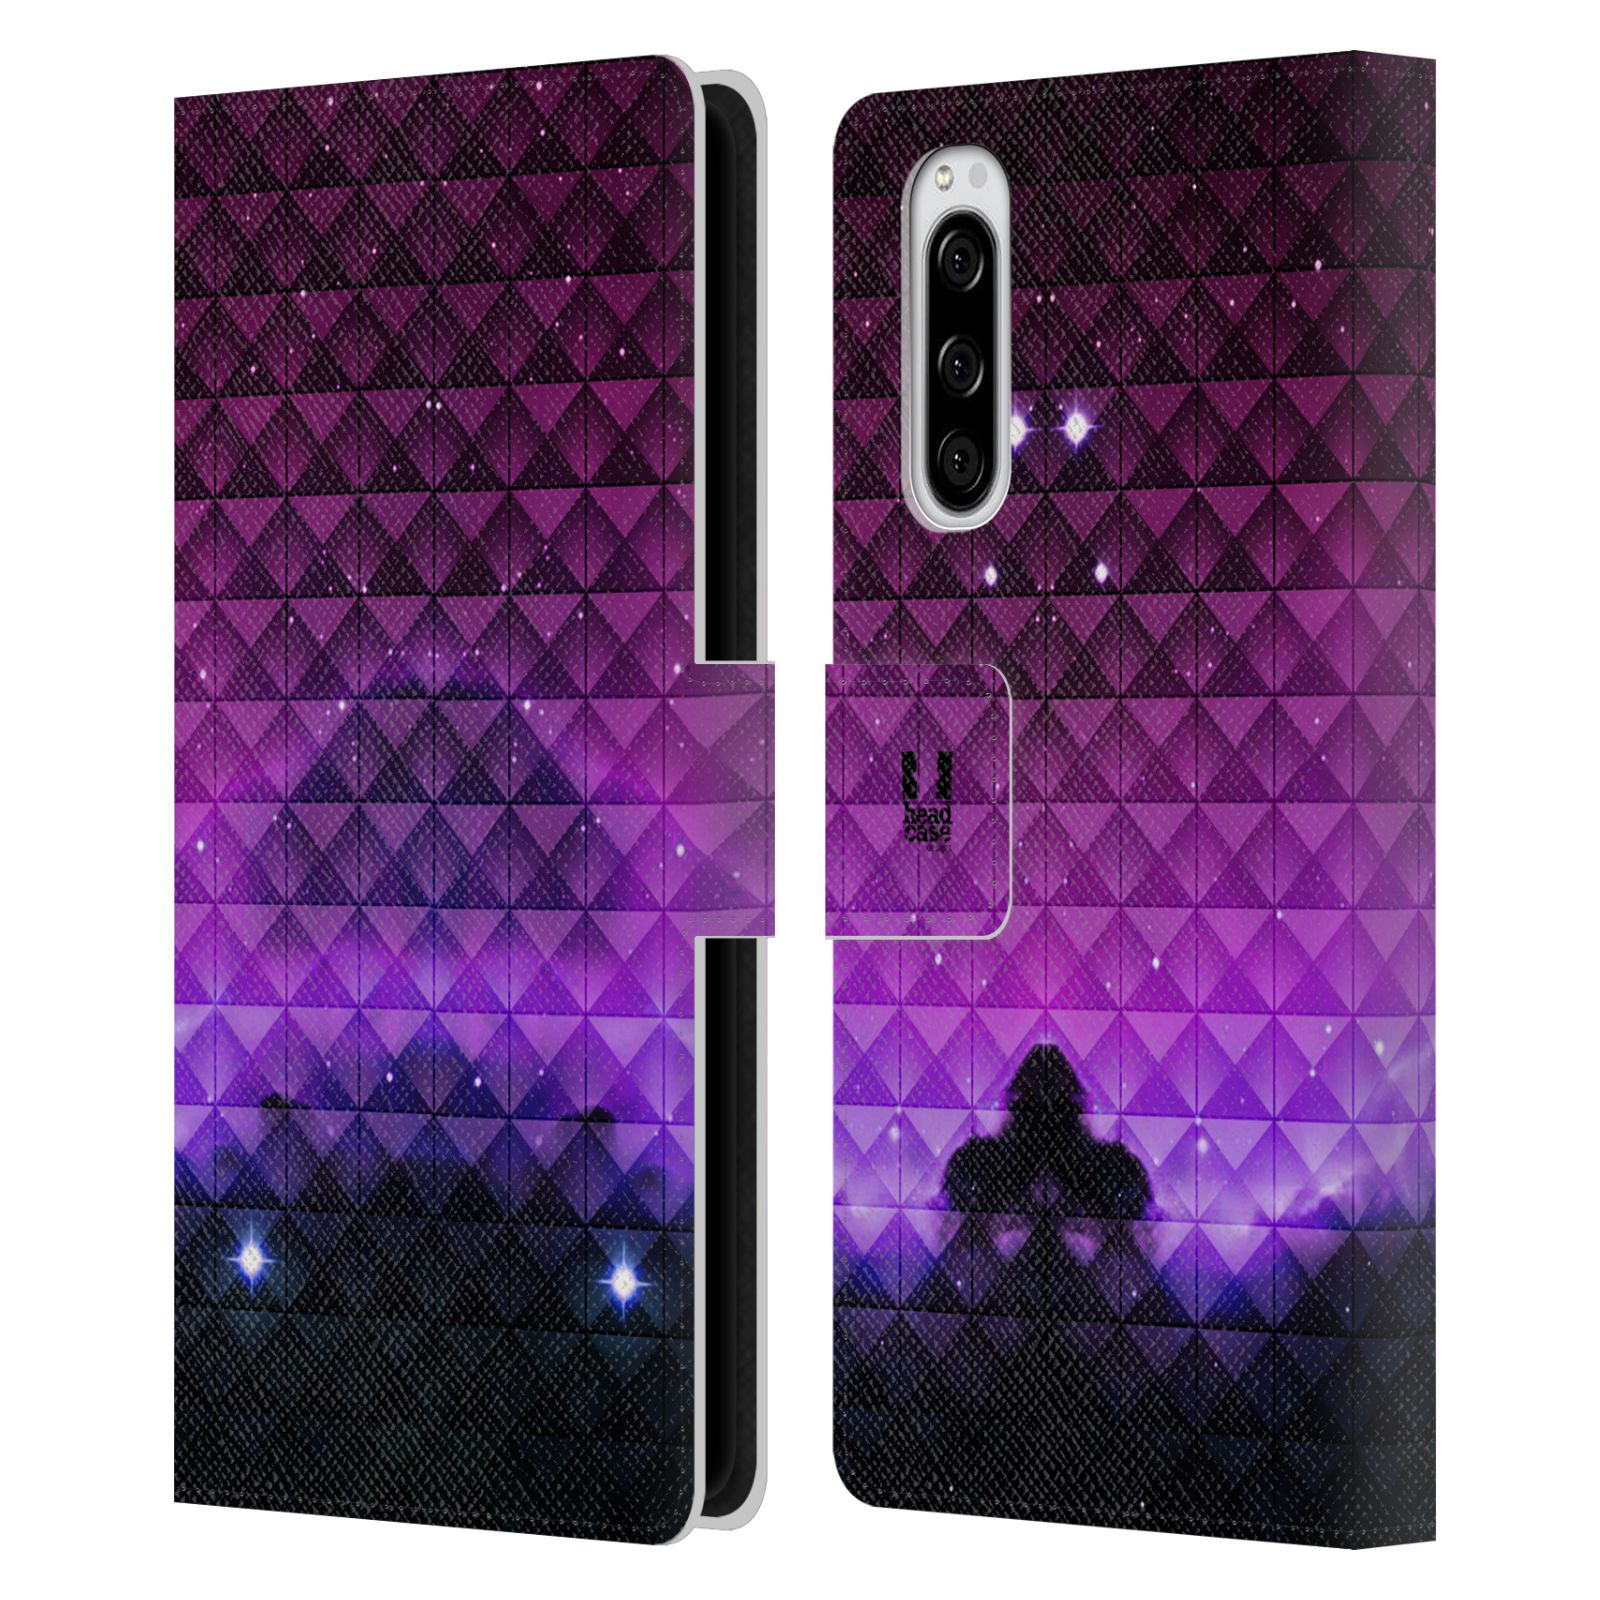 Pouzdro na mobil Sony Xperia 5 barevná vesmírná mlhovina fialová a černá